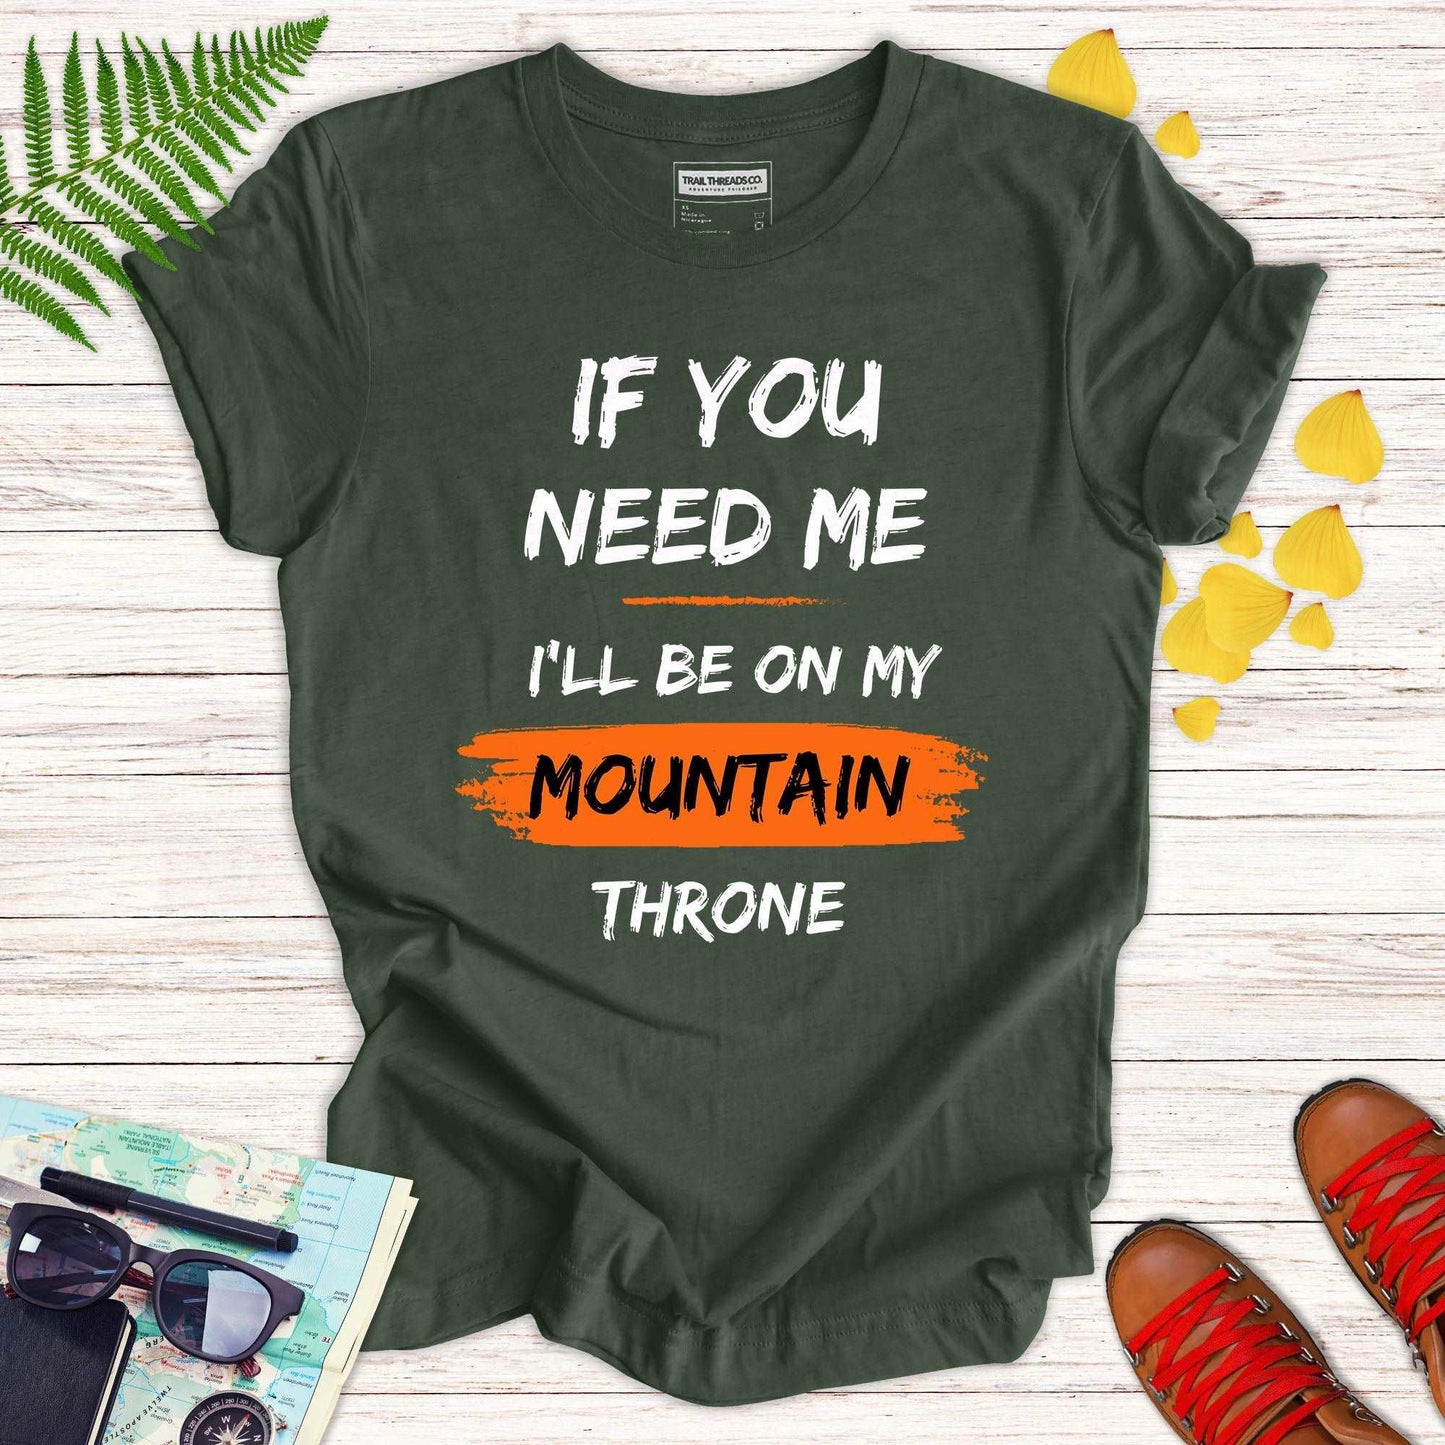 Mountain Throne T-shirt